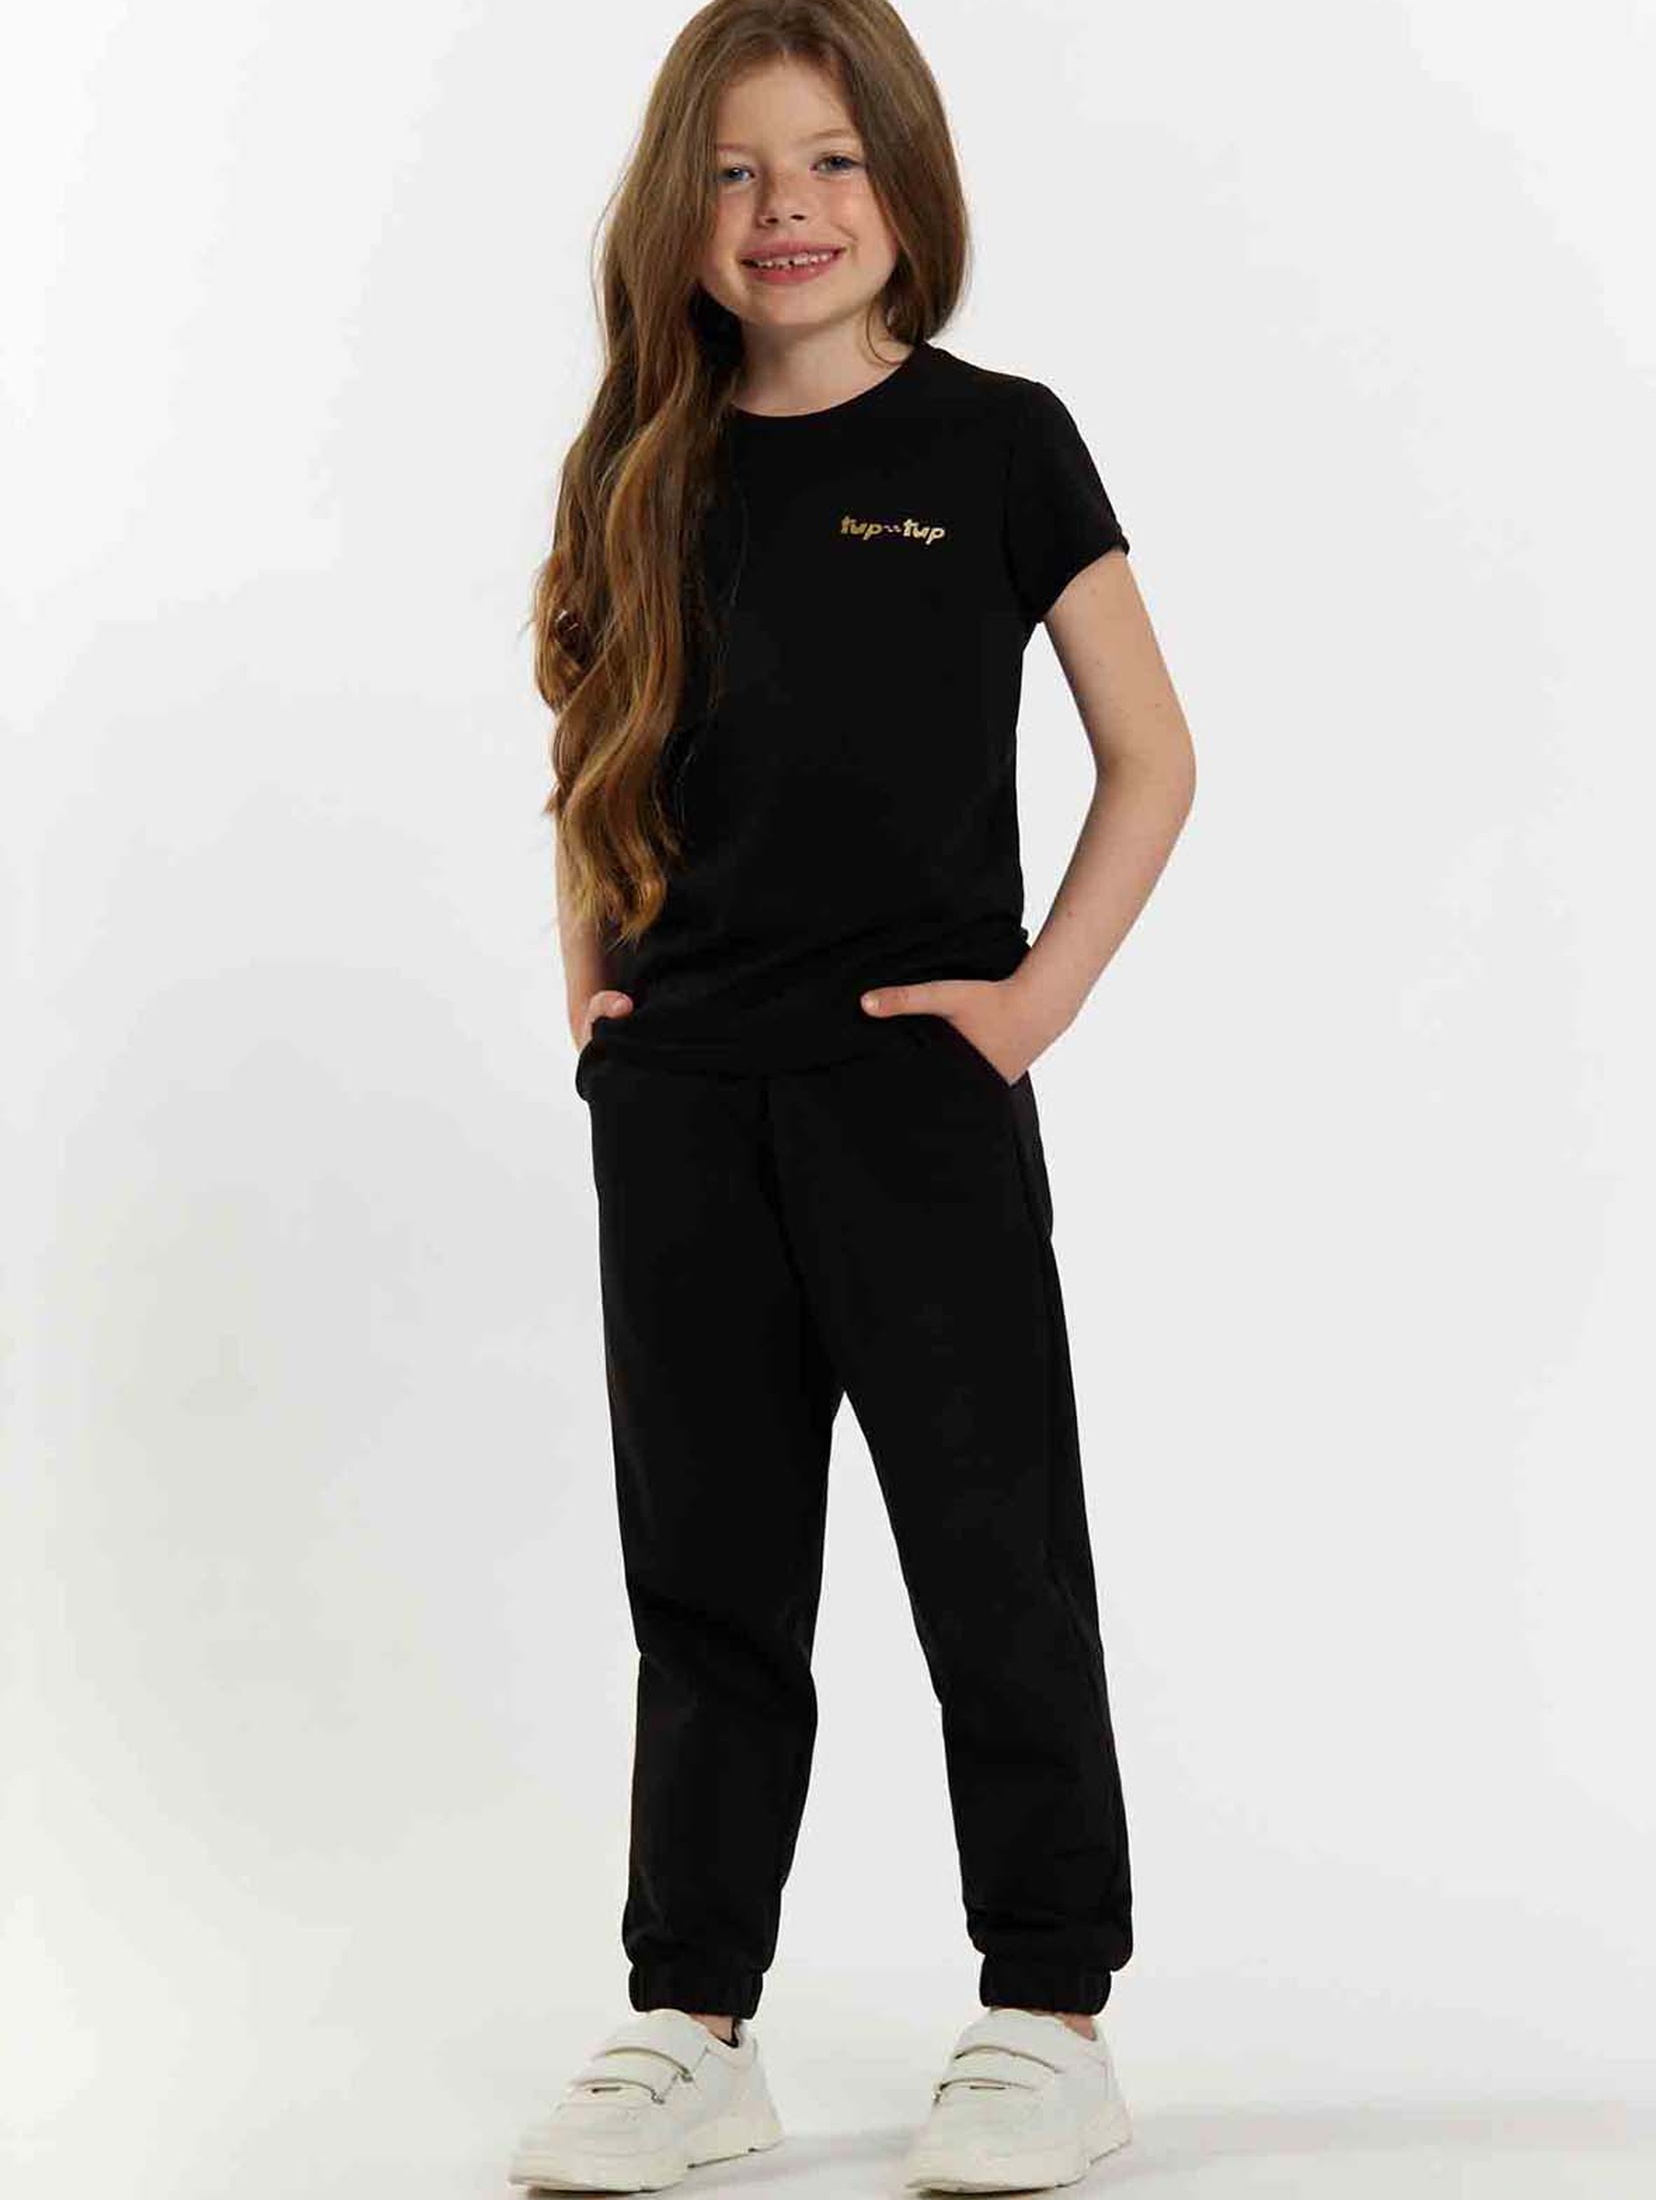 Czarny t-shirt dla małej dziewczynki z napisem Tup Tup